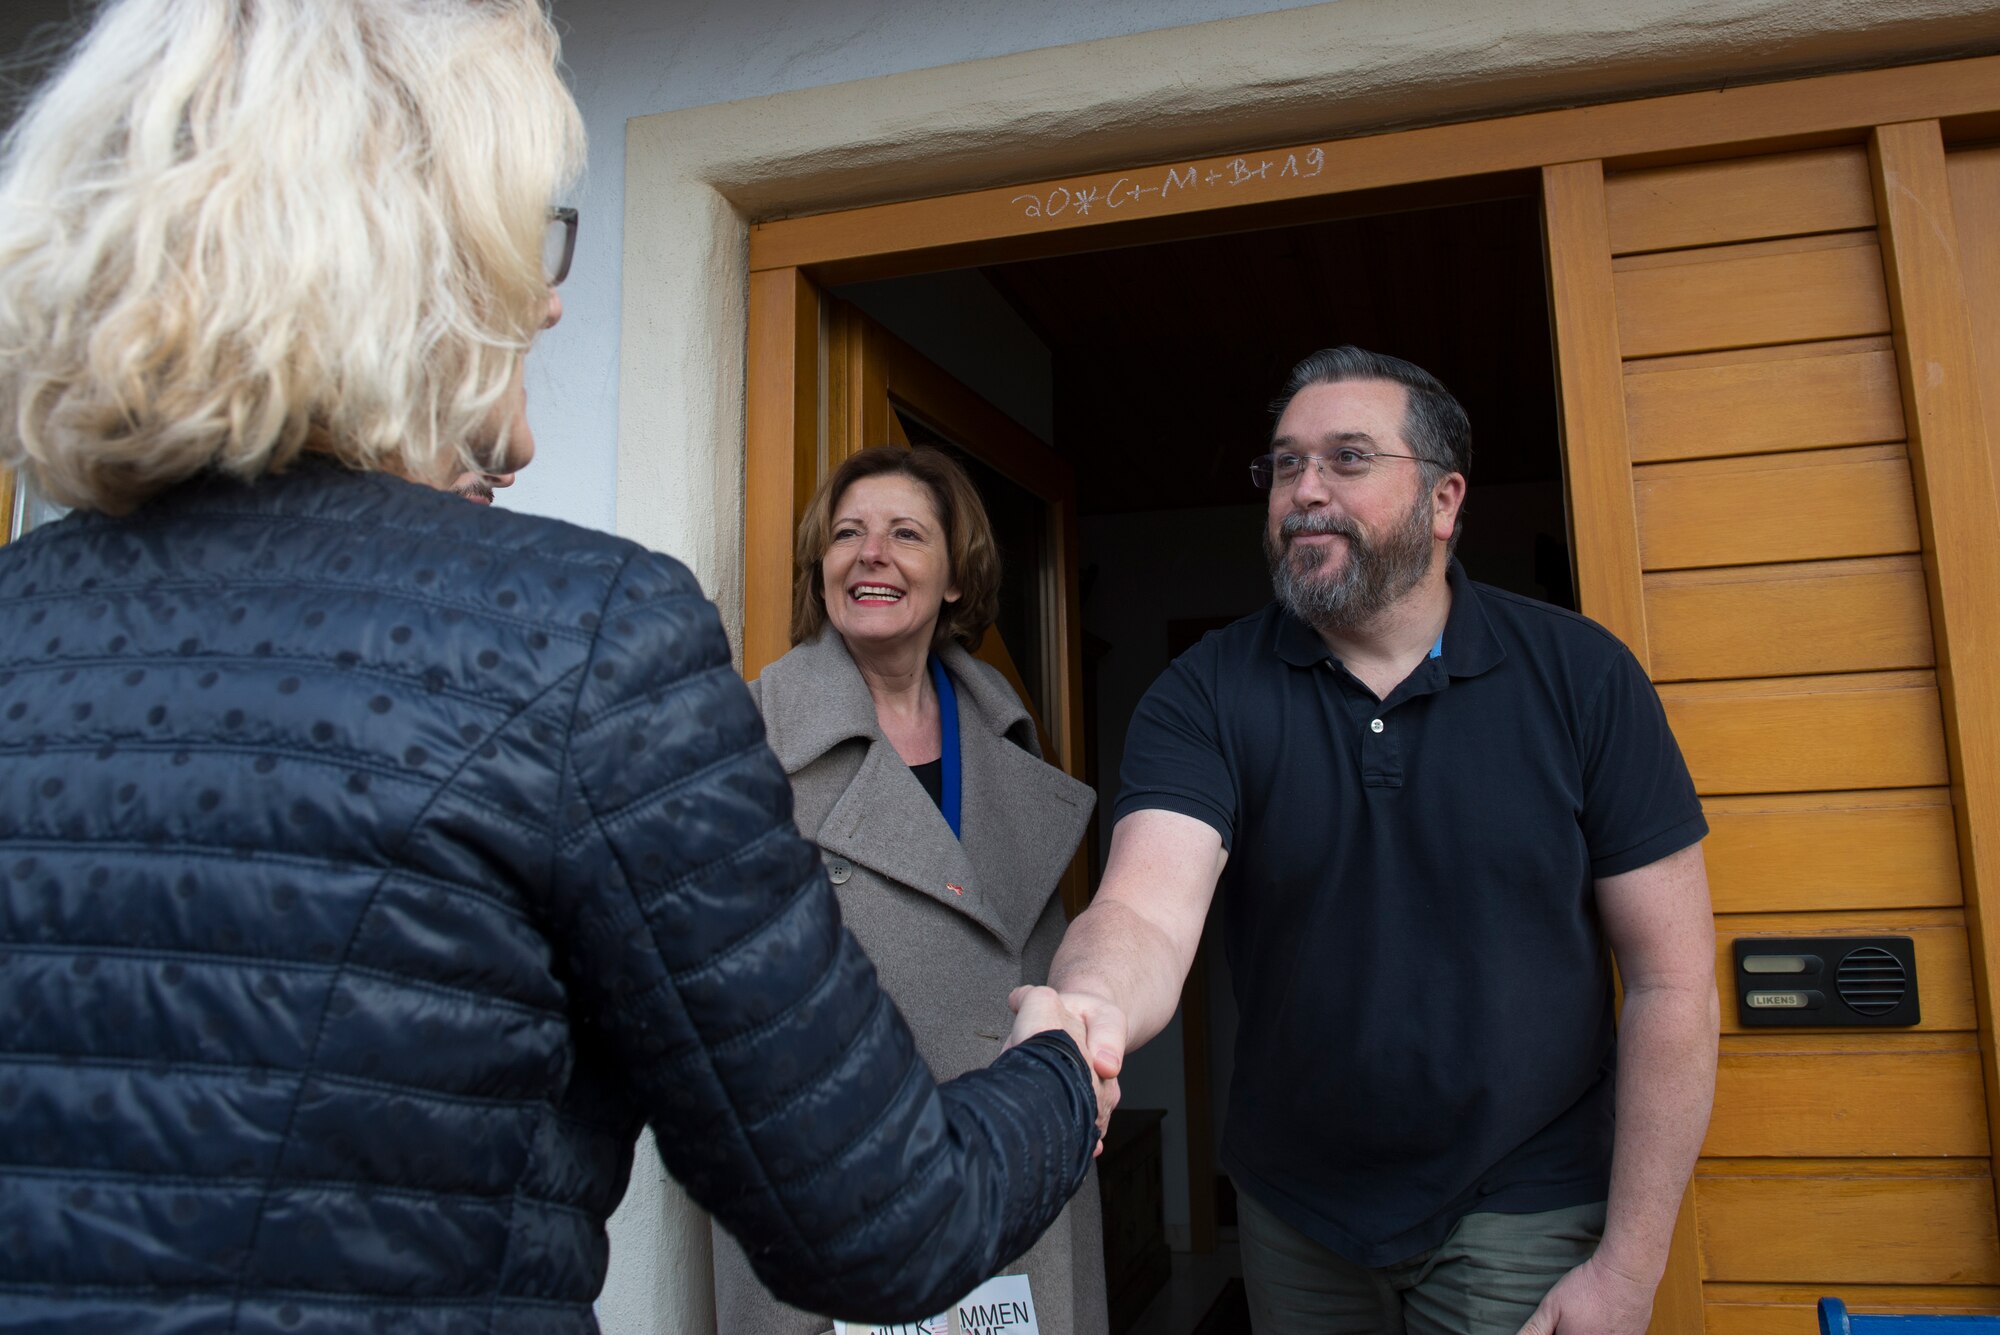 Mayor of Kottweiler-Schwanden greets resident of Kottweiler-Schwande